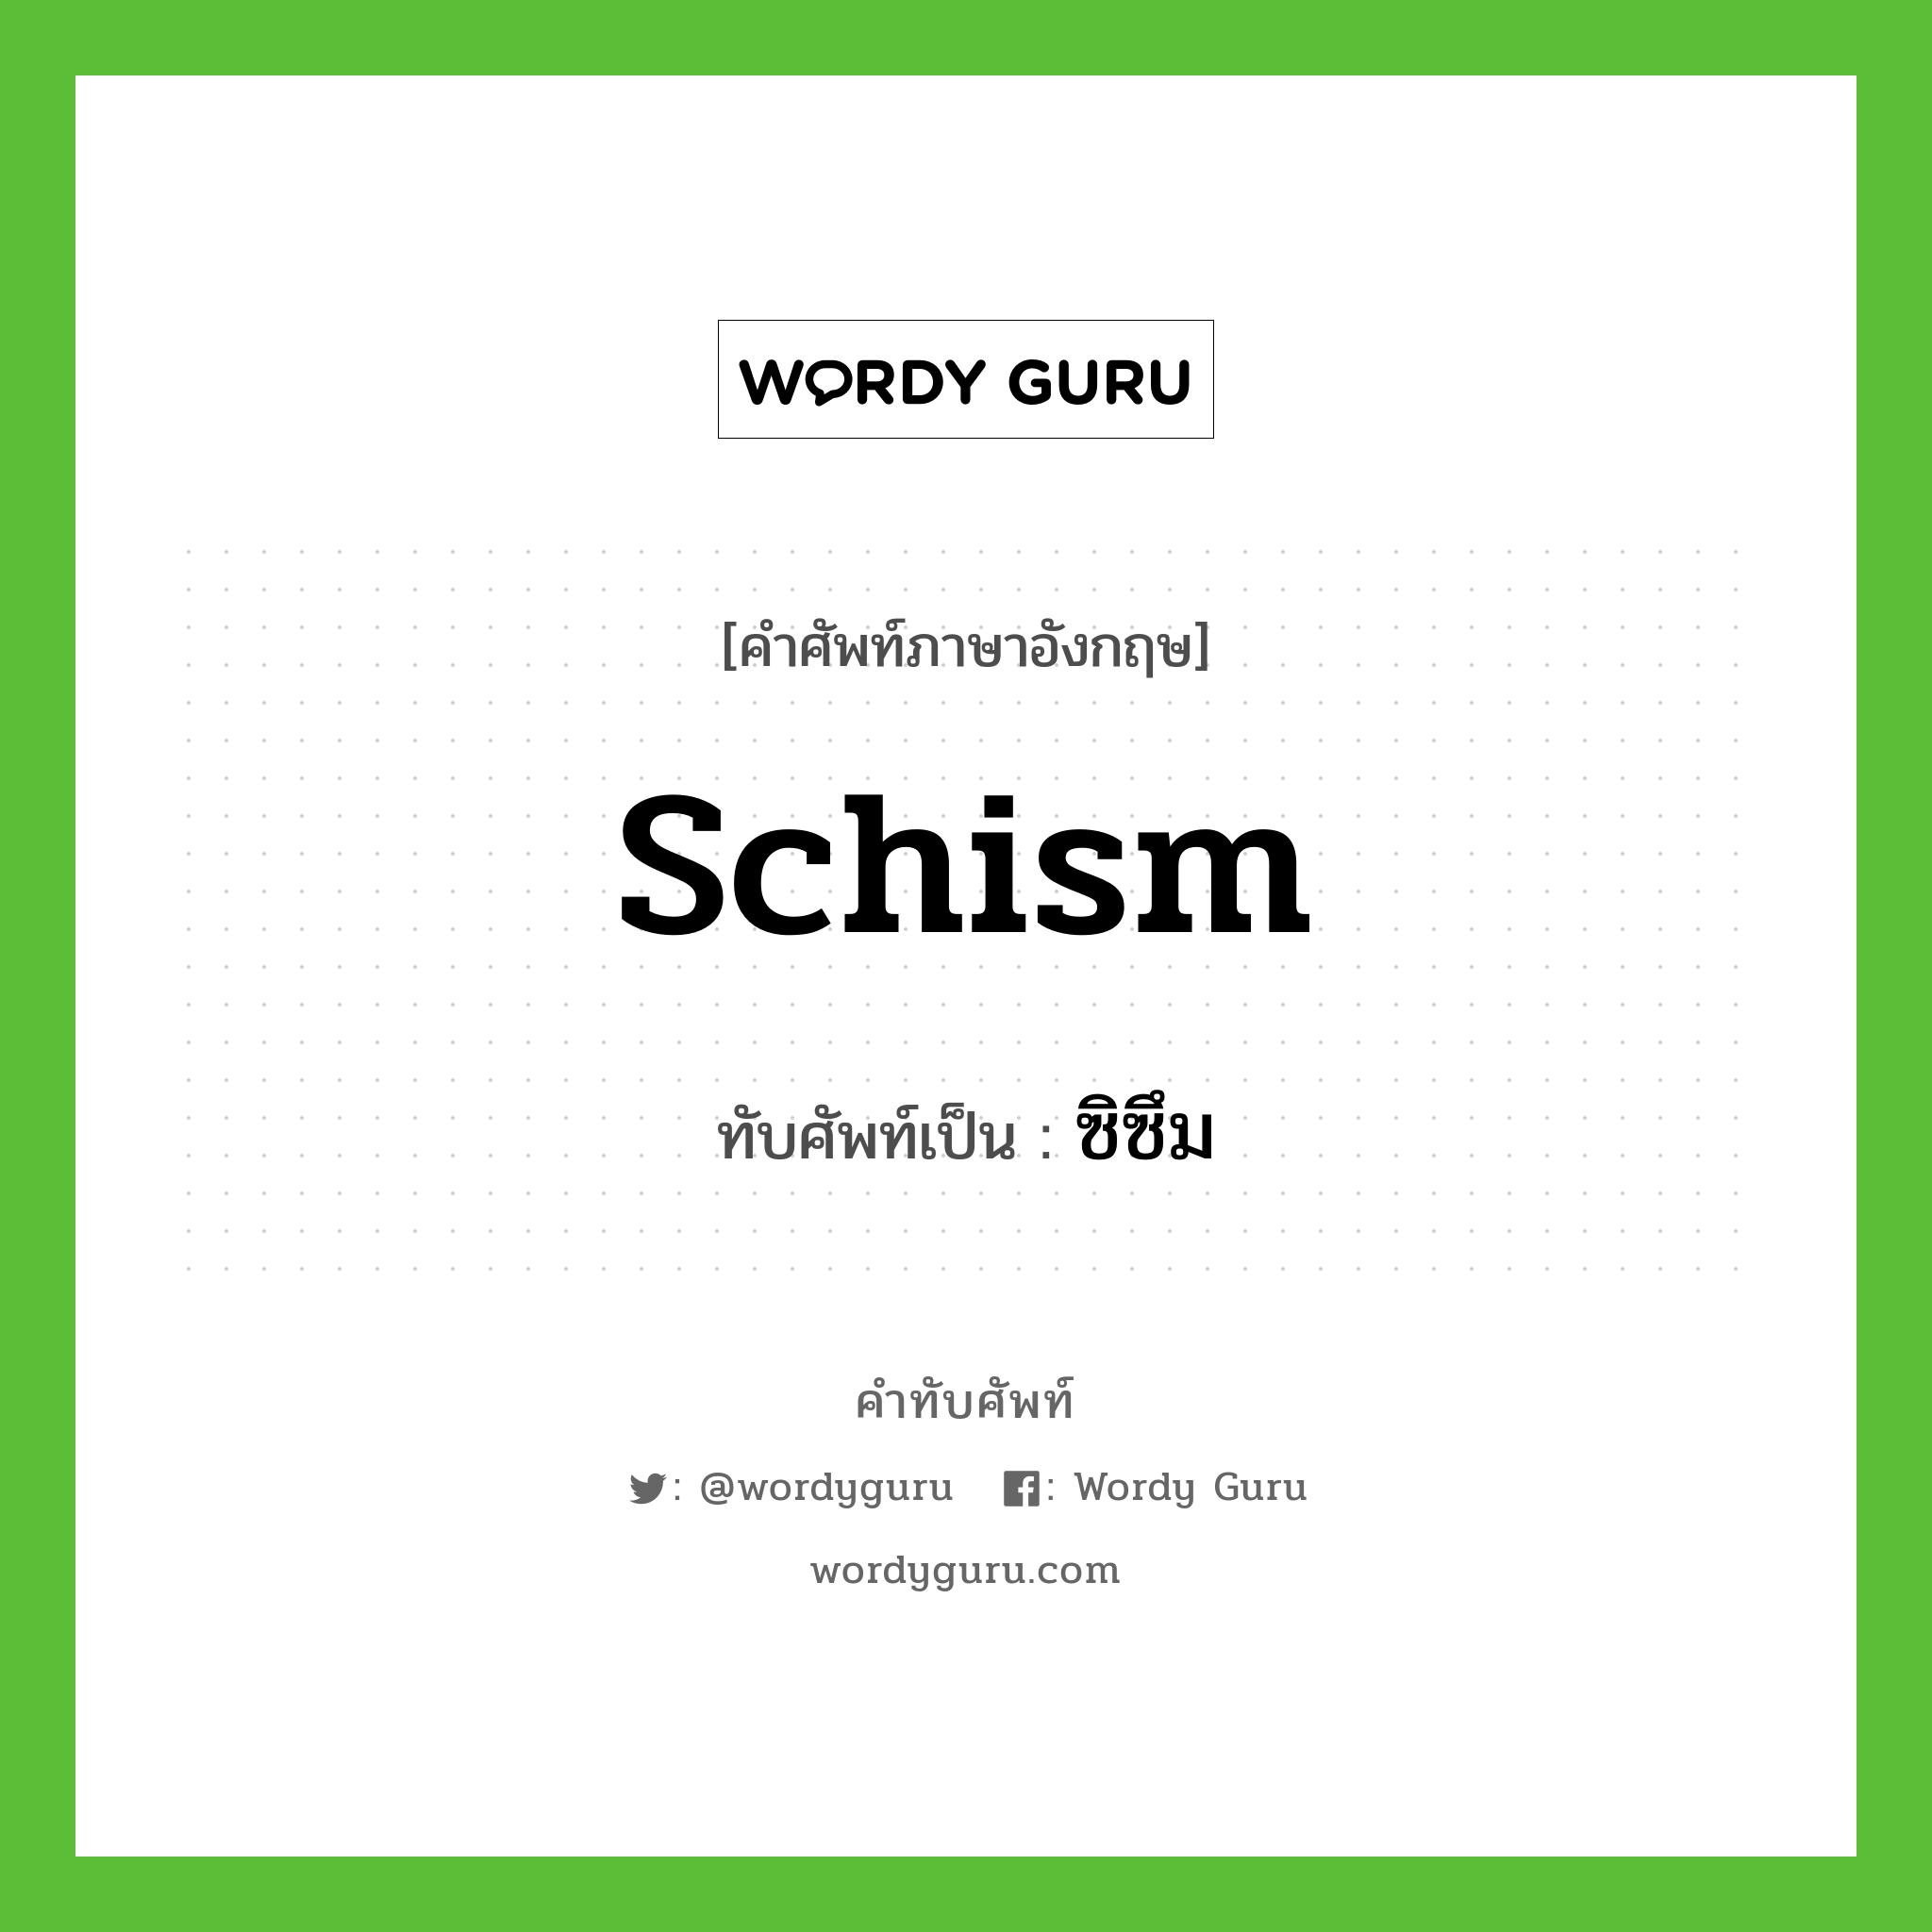 schism เขียนเป็นคำไทยว่าอะไร?, คำศัพท์ภาษาอังกฤษ schism ทับศัพท์เป็น ซิซึม